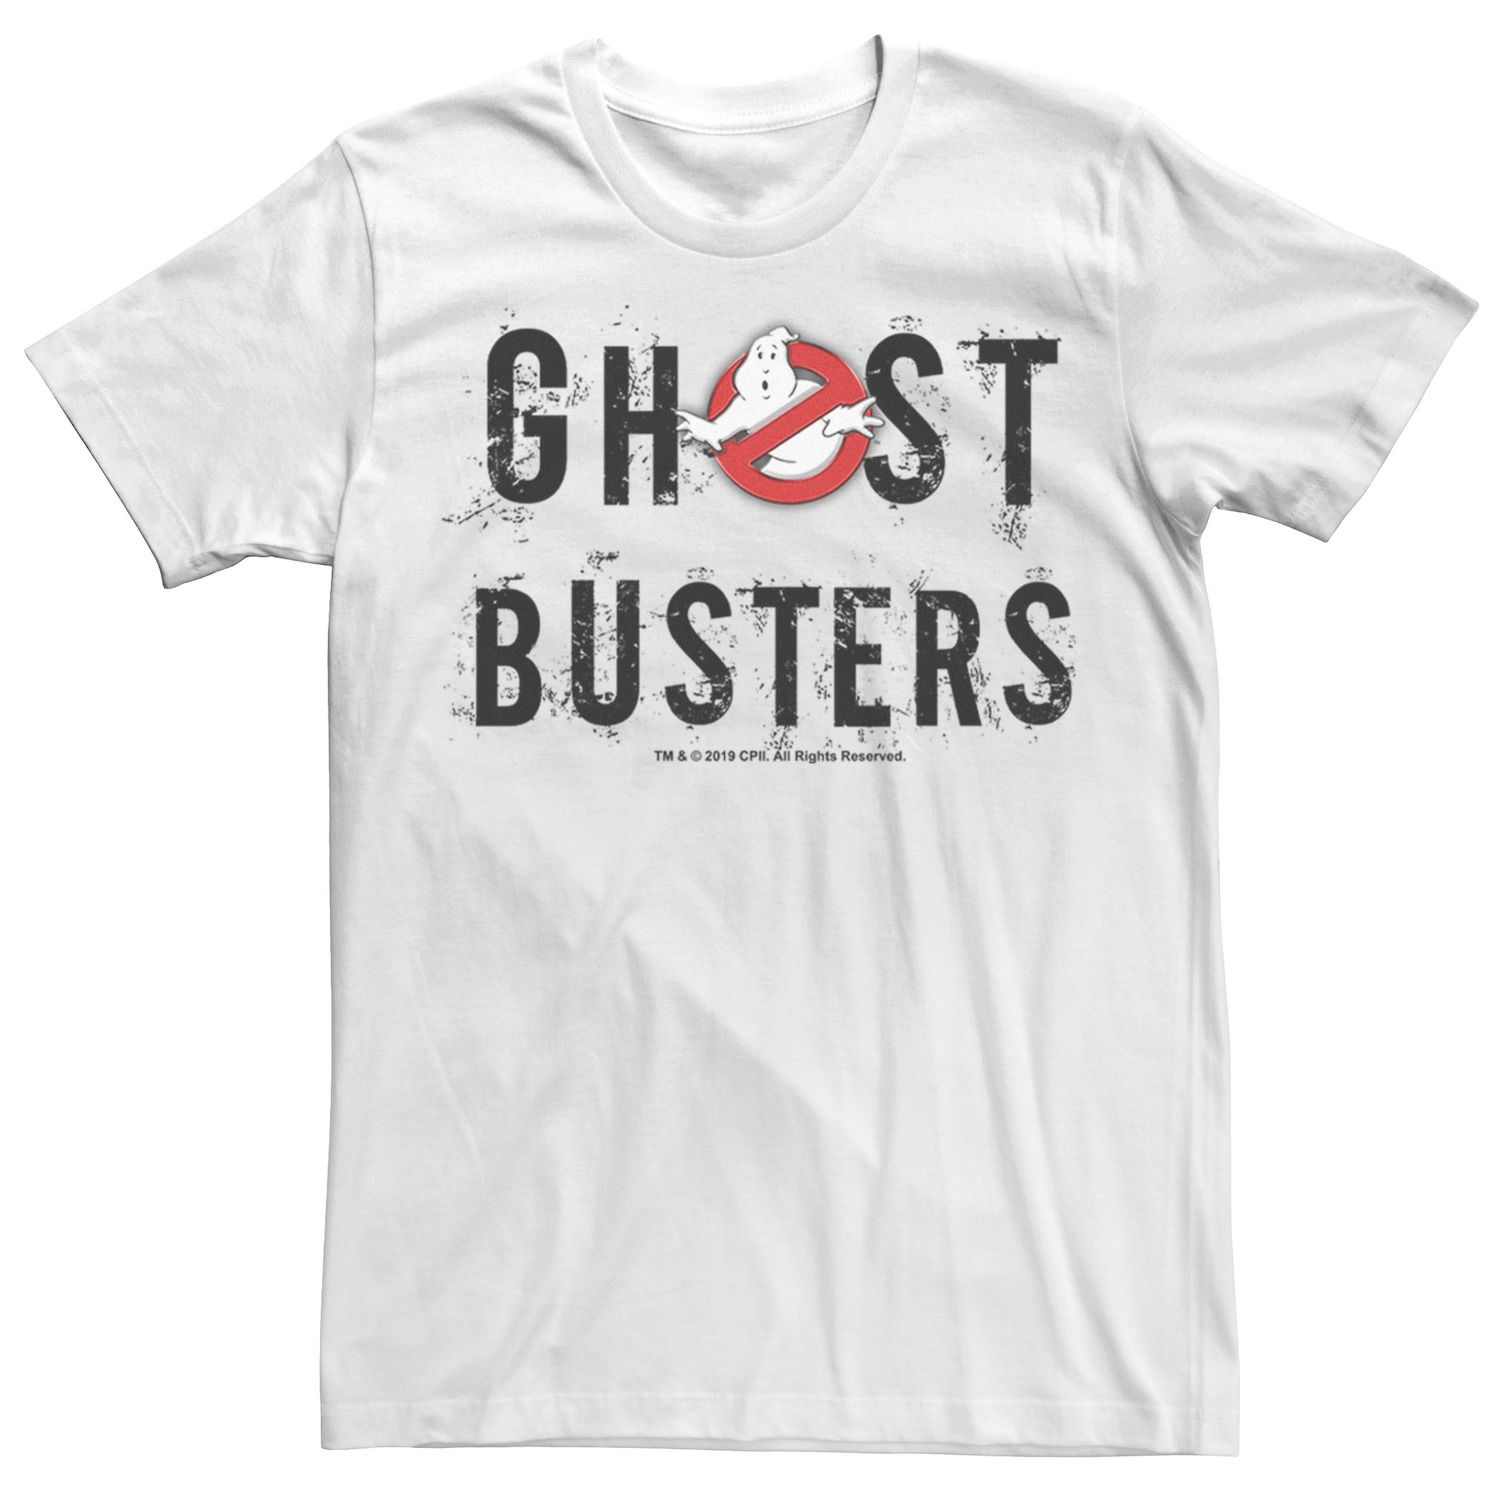 Мужская футболка с логотипом «Охотники за привидениями» Licensed Character